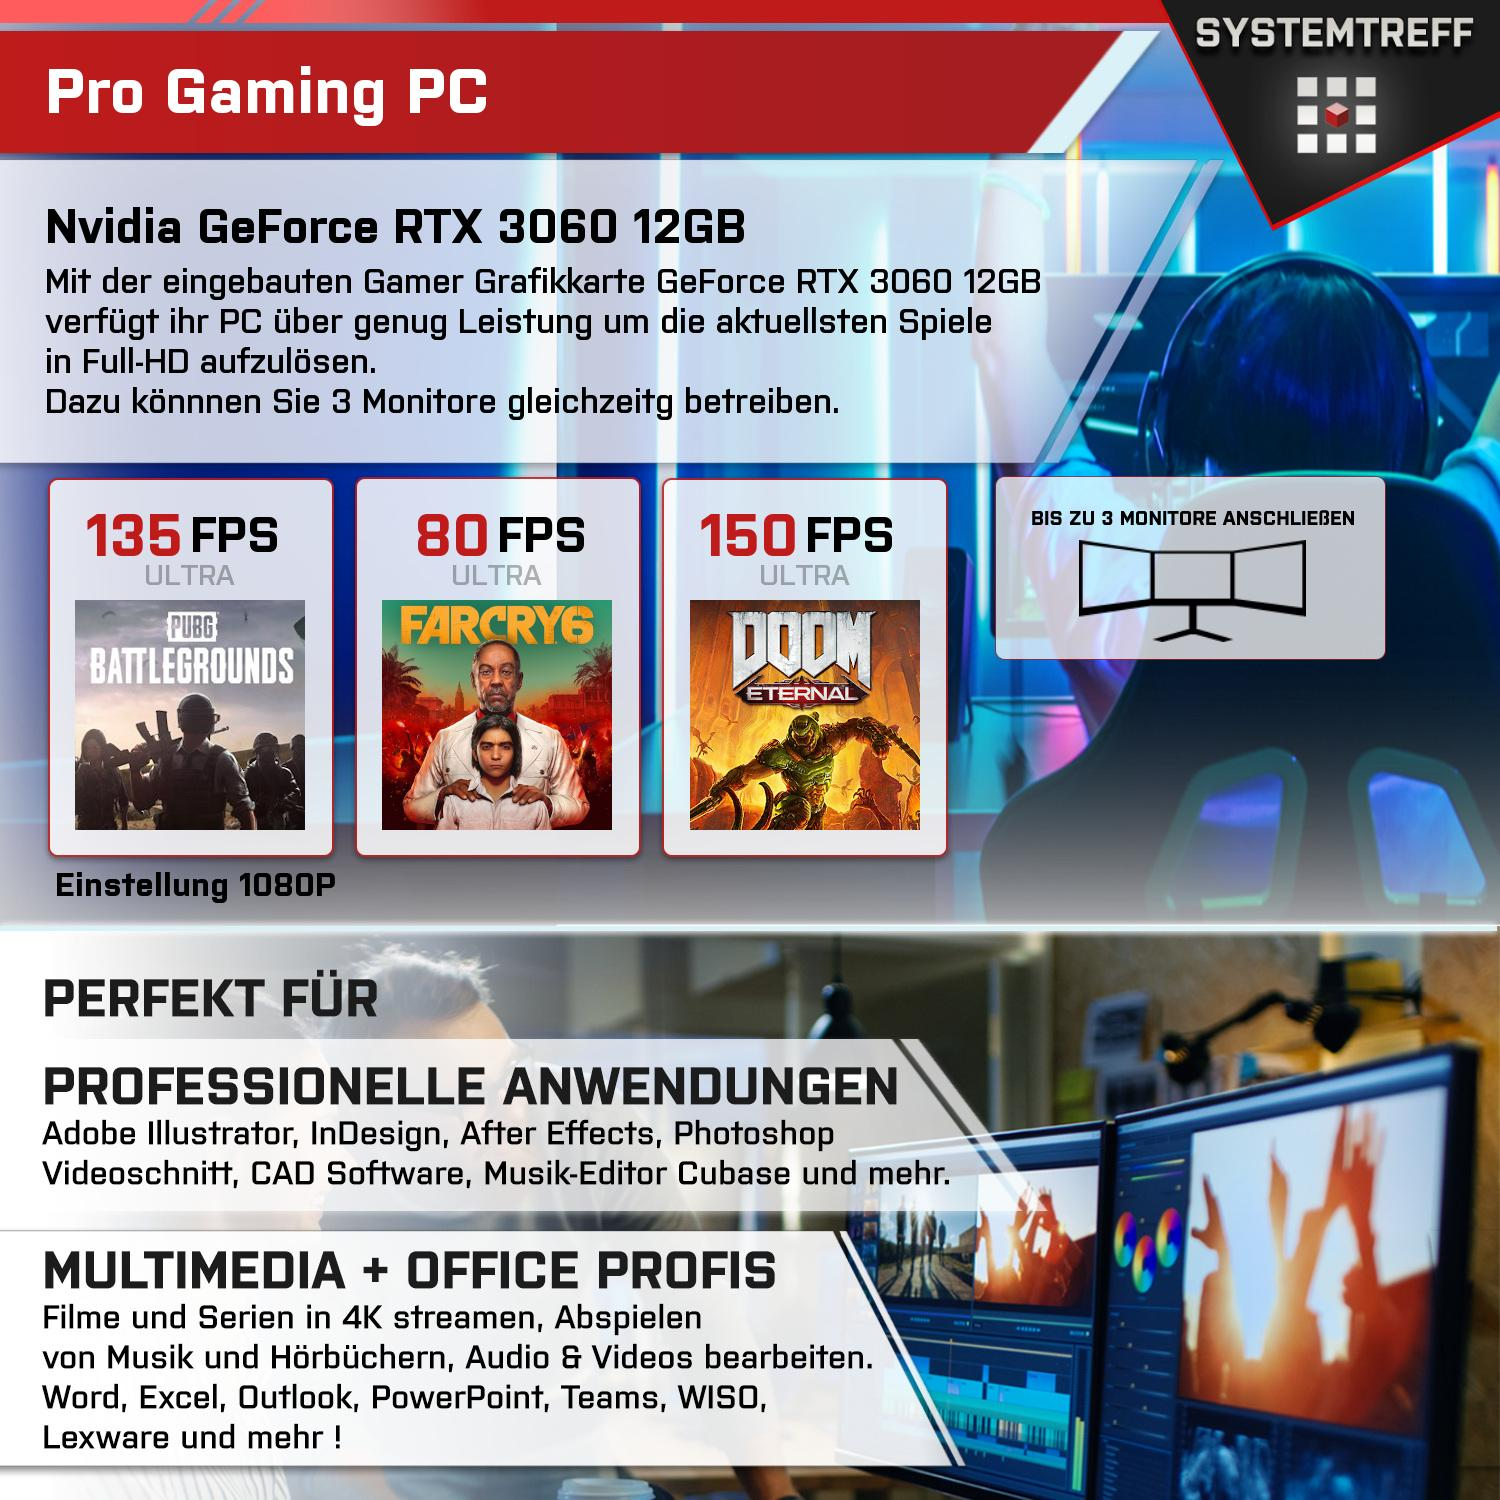 SYSTEMTREFF Gaming Komplett Intel Core mSSD, 3060 i7-11700KF, GB 512 12 PC i7-11700KF Komplett RTX GeForce GB Prozessor, 12GB Nvidia GB mit RAM, GDDR6, 16